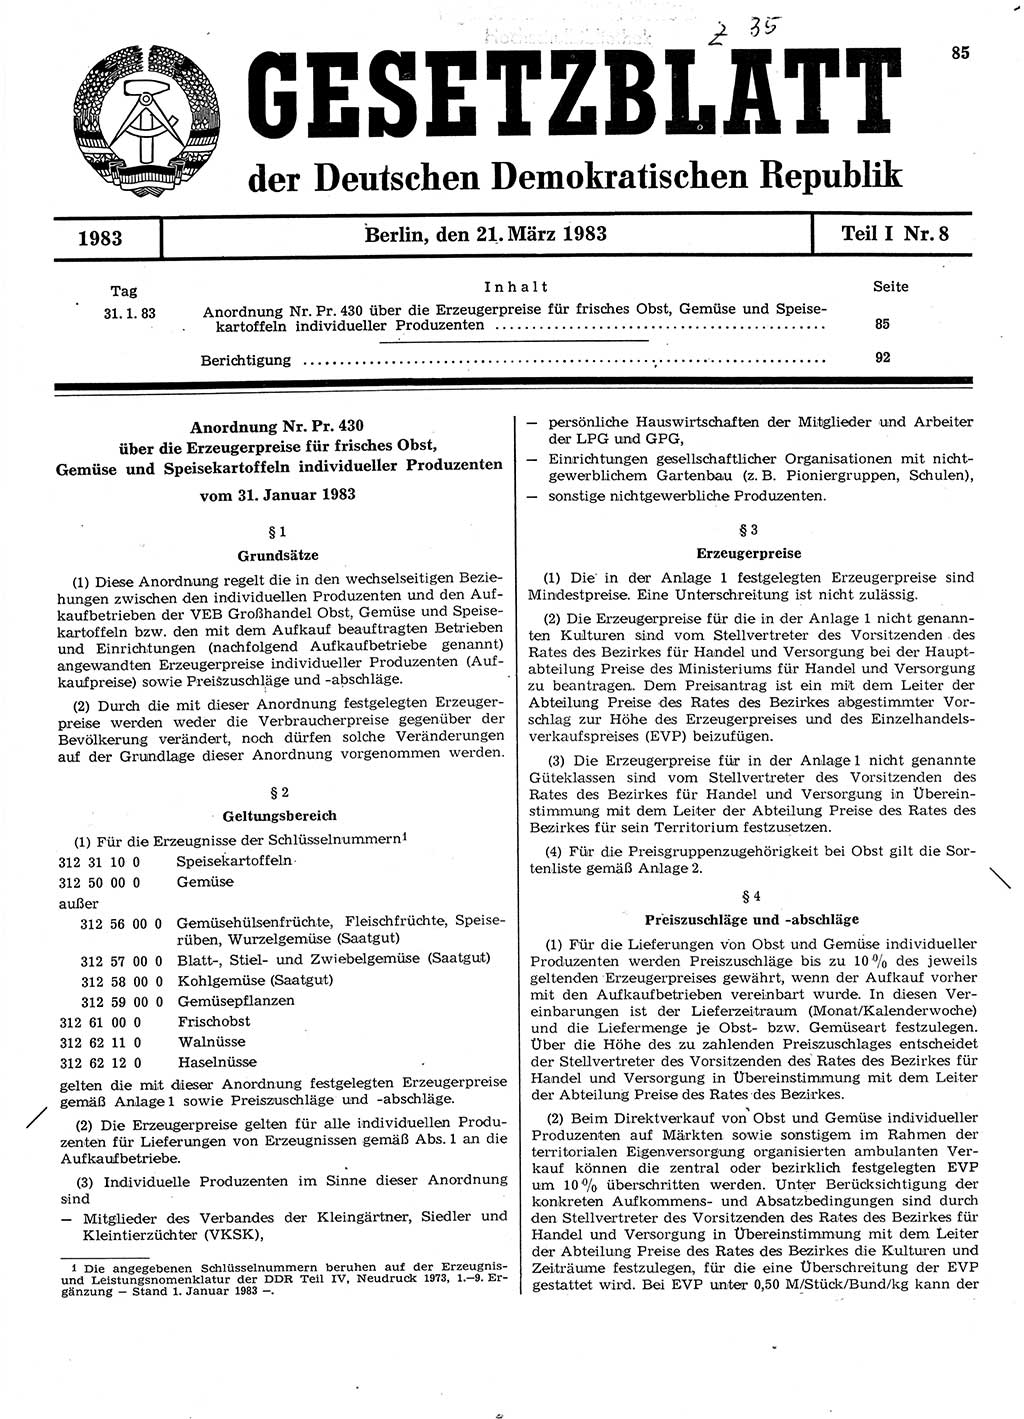 Gesetzblatt (GBl.) der Deutschen Demokratischen Republik (DDR) Teil Ⅰ 1983, Seite 85 (GBl. DDR Ⅰ 1983, S. 85)